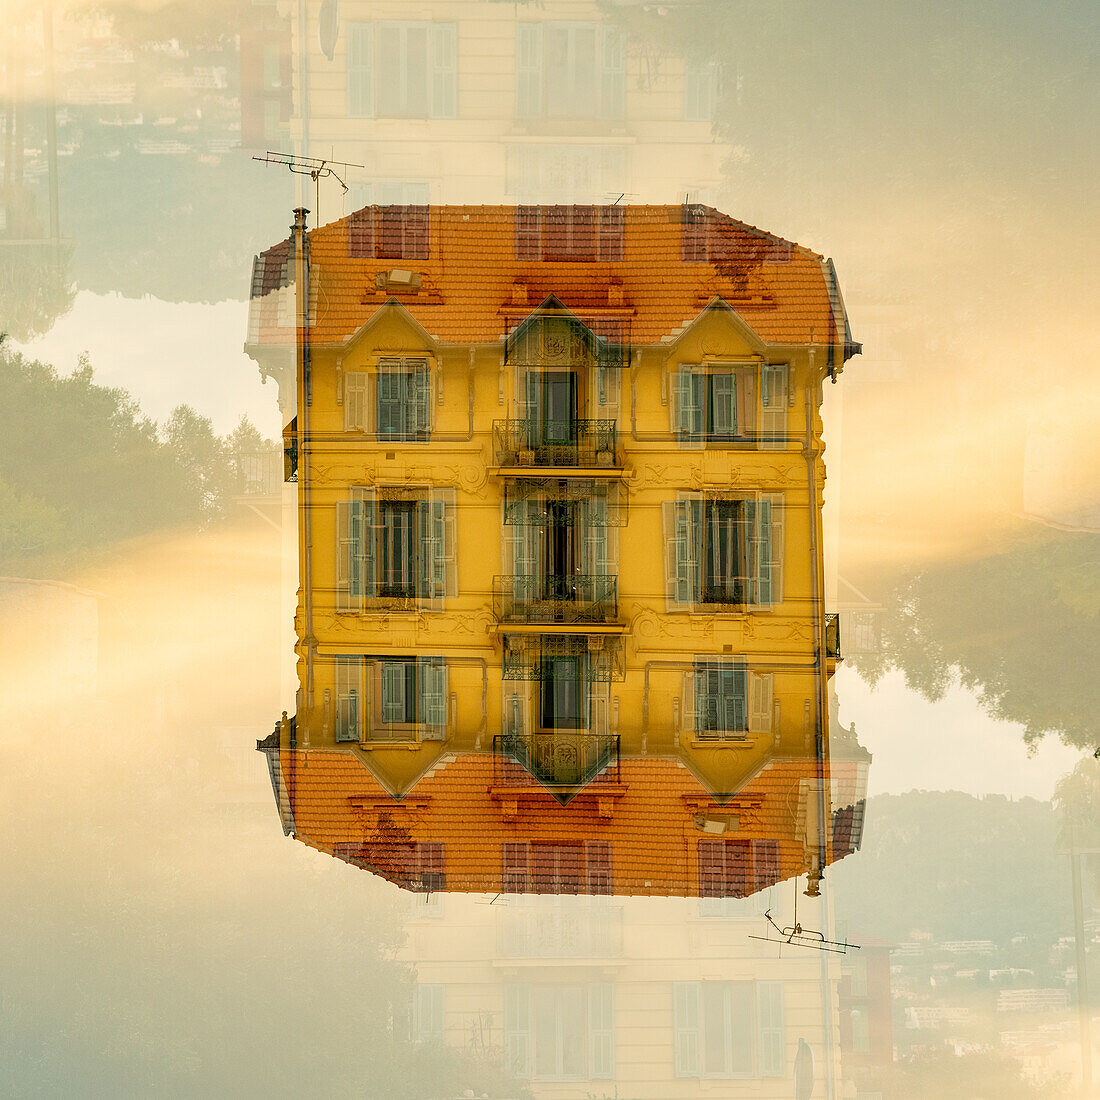 Doppelbelichtung eines gelben Hauses in Nizza, Frankreich.